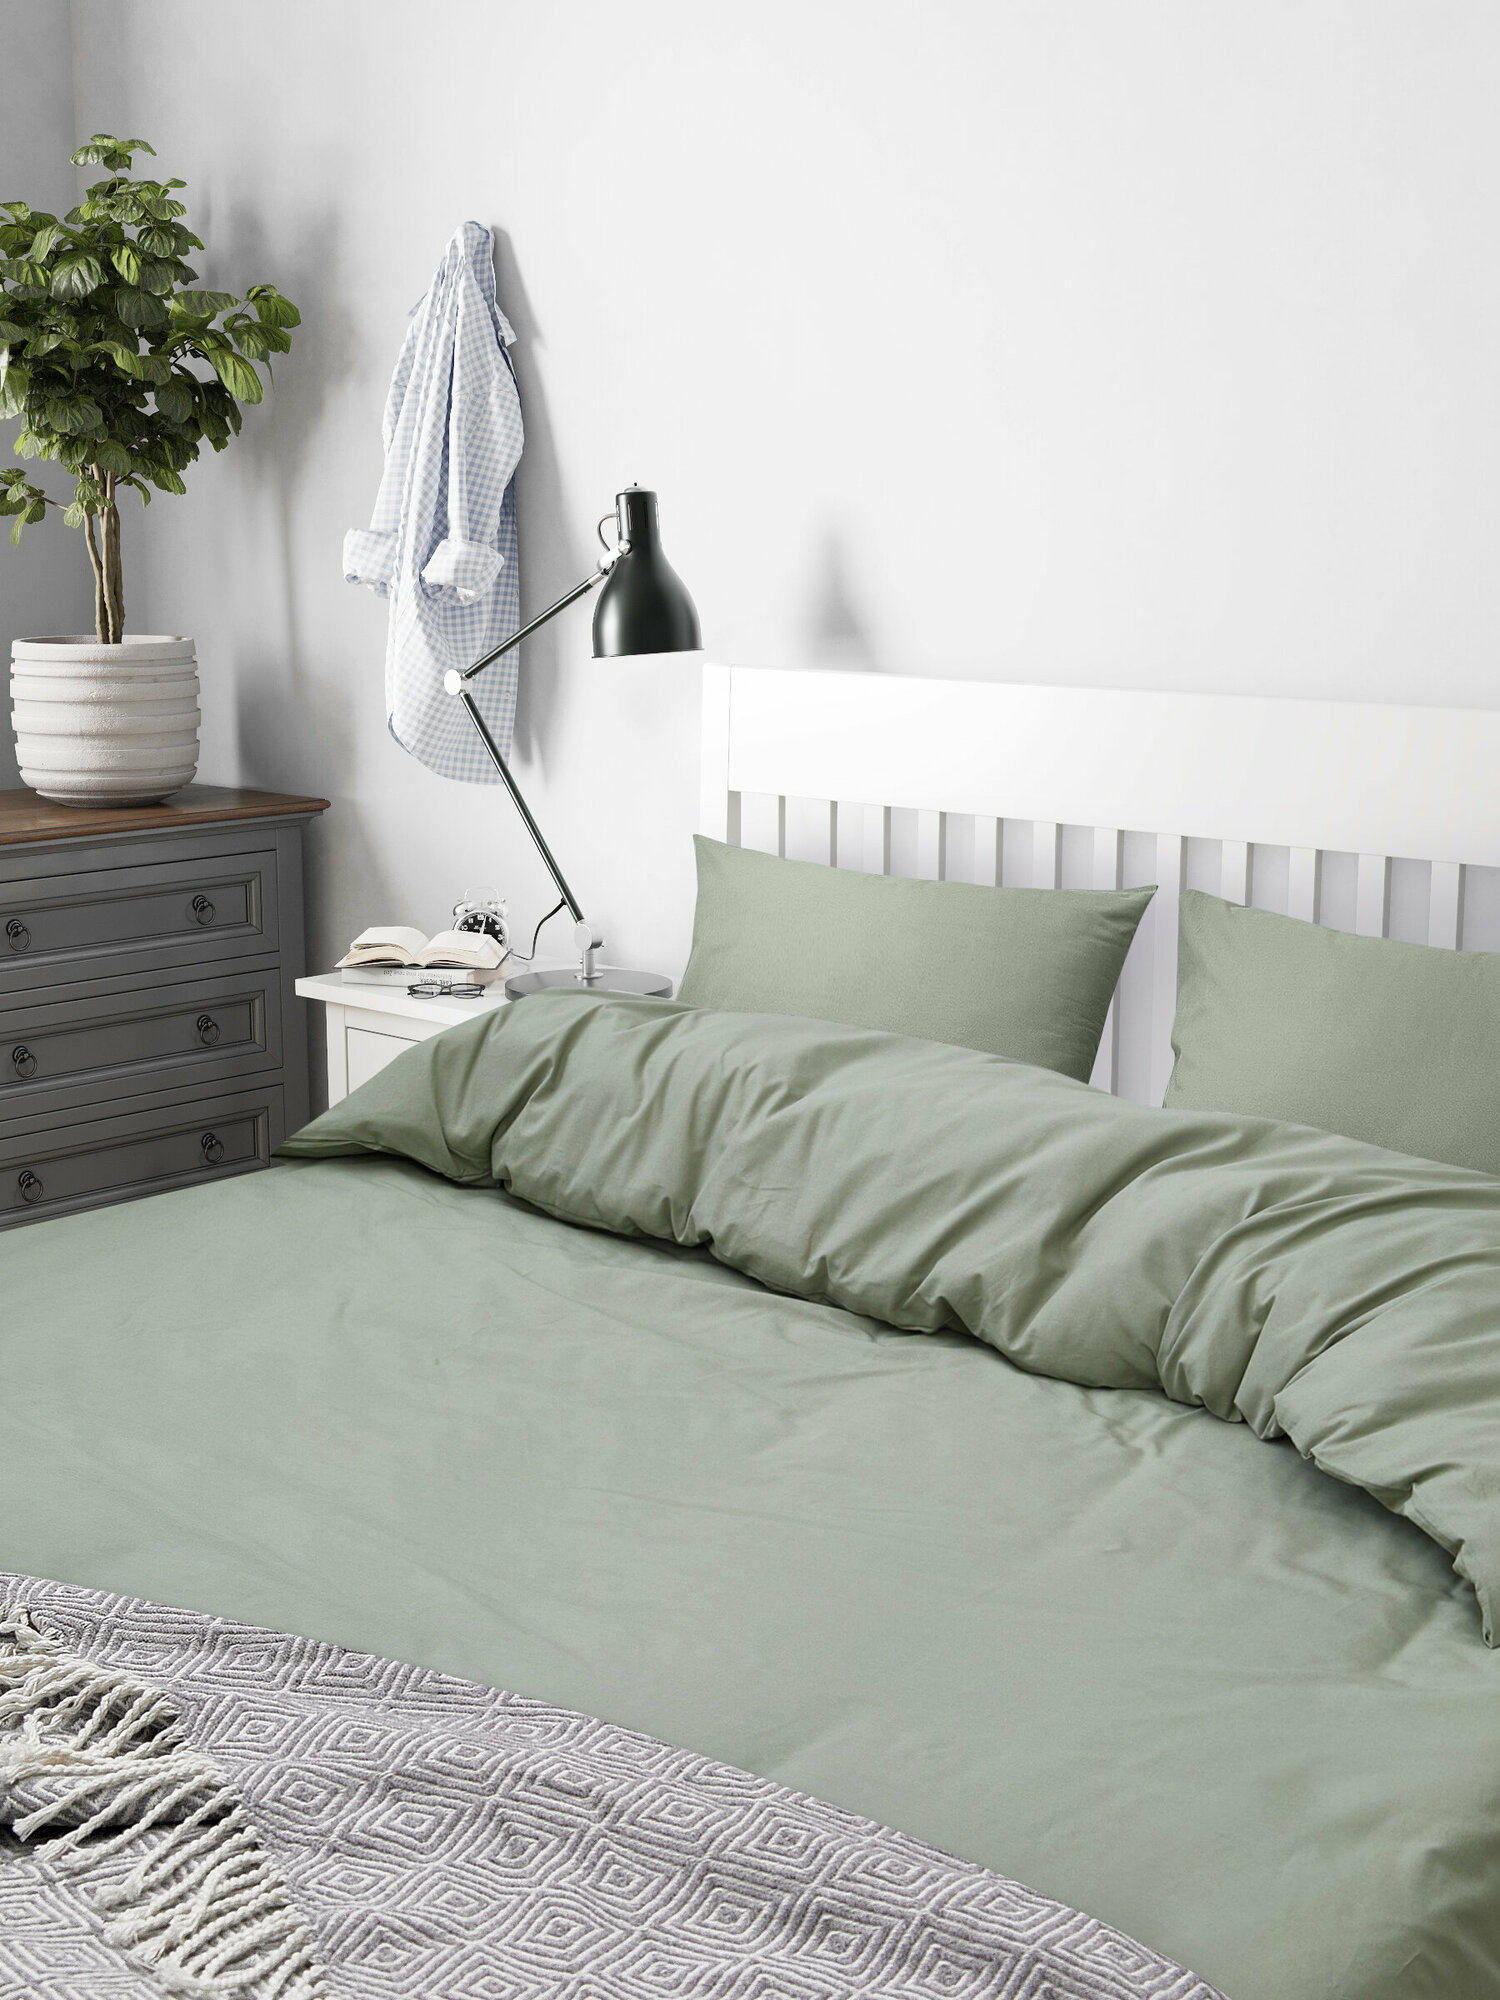 Постельное белье амилия/DVALA 1,5-спальное с пододеяльником 150х200 см и 1 наволочкой 50х70 см, серо-зеленое